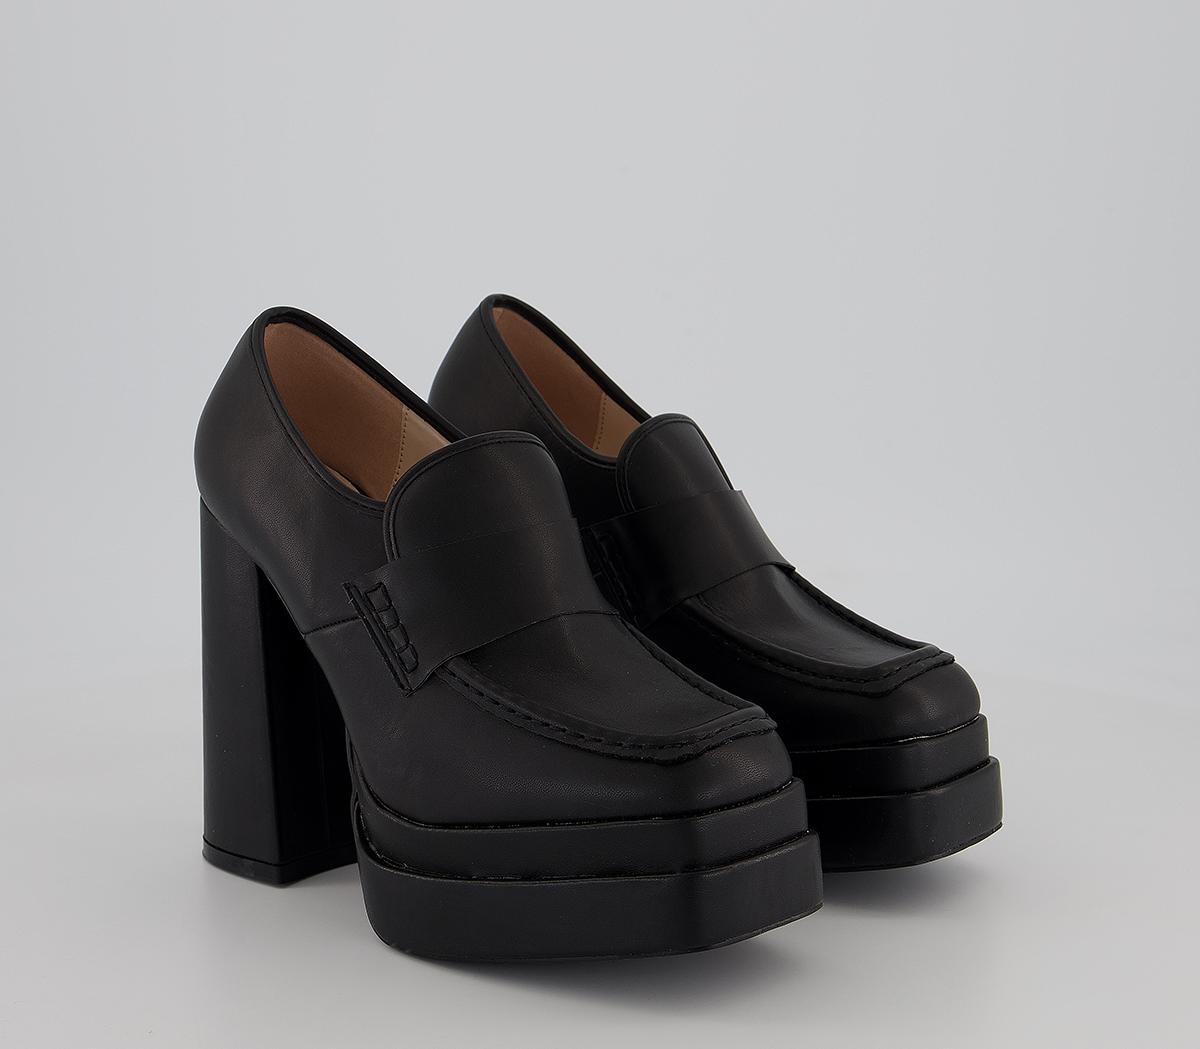 Raid Fancy Platform Loafers Black - Women’s Loafers